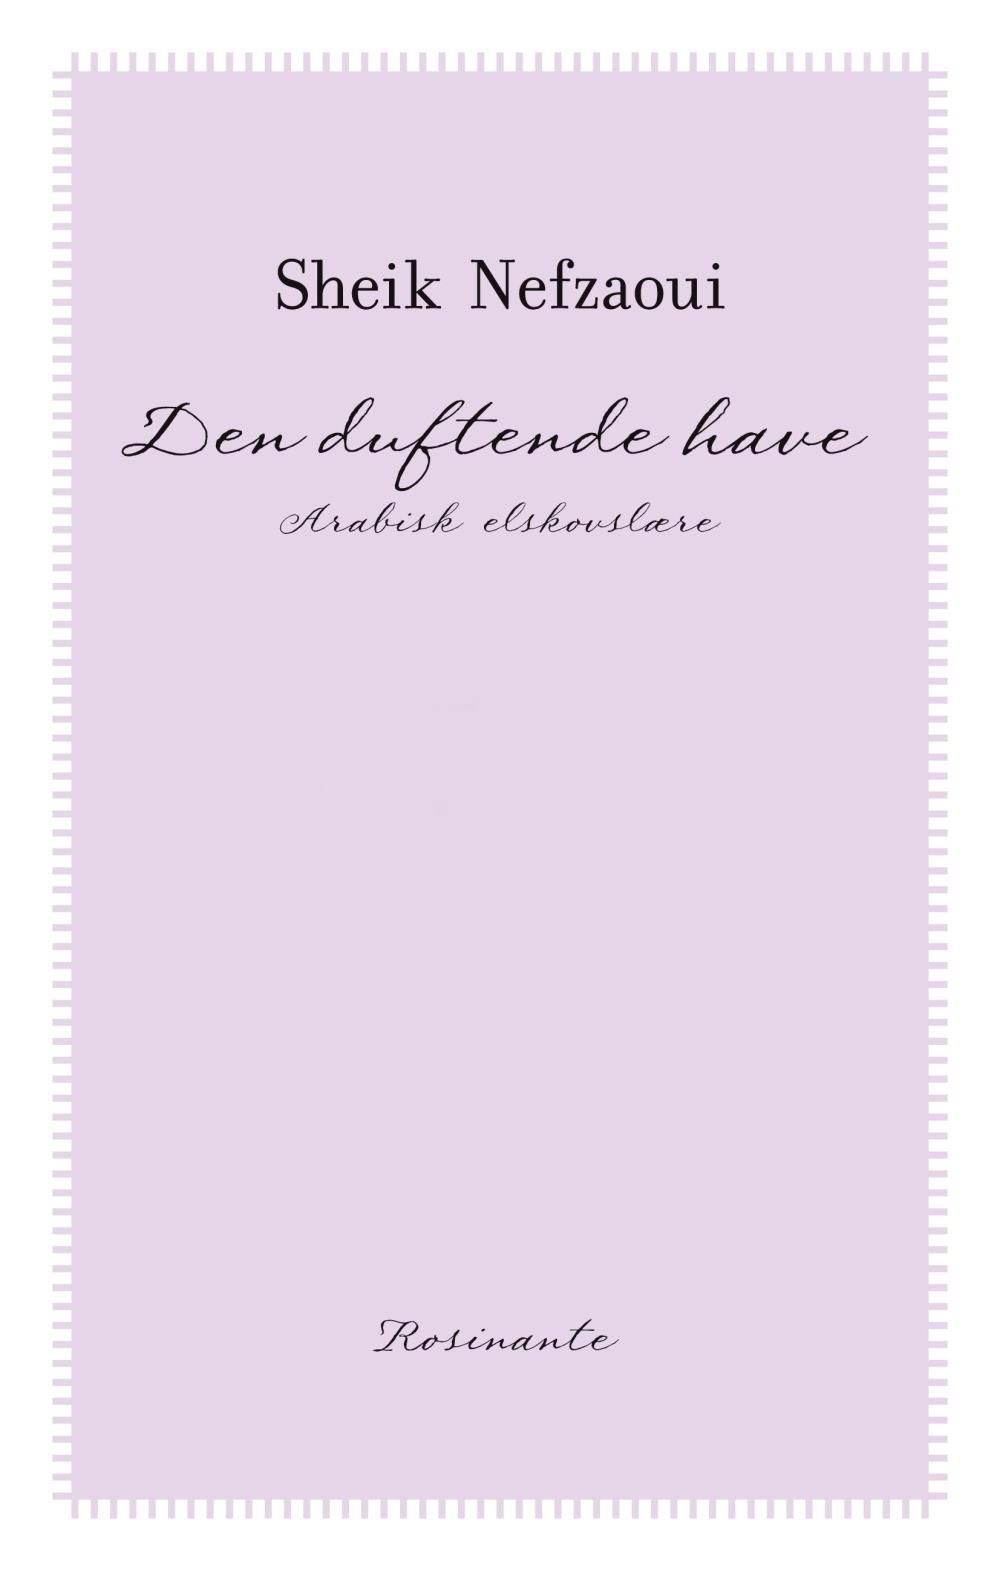 Den duftende have, e-bok av Sheik Nefzaoui